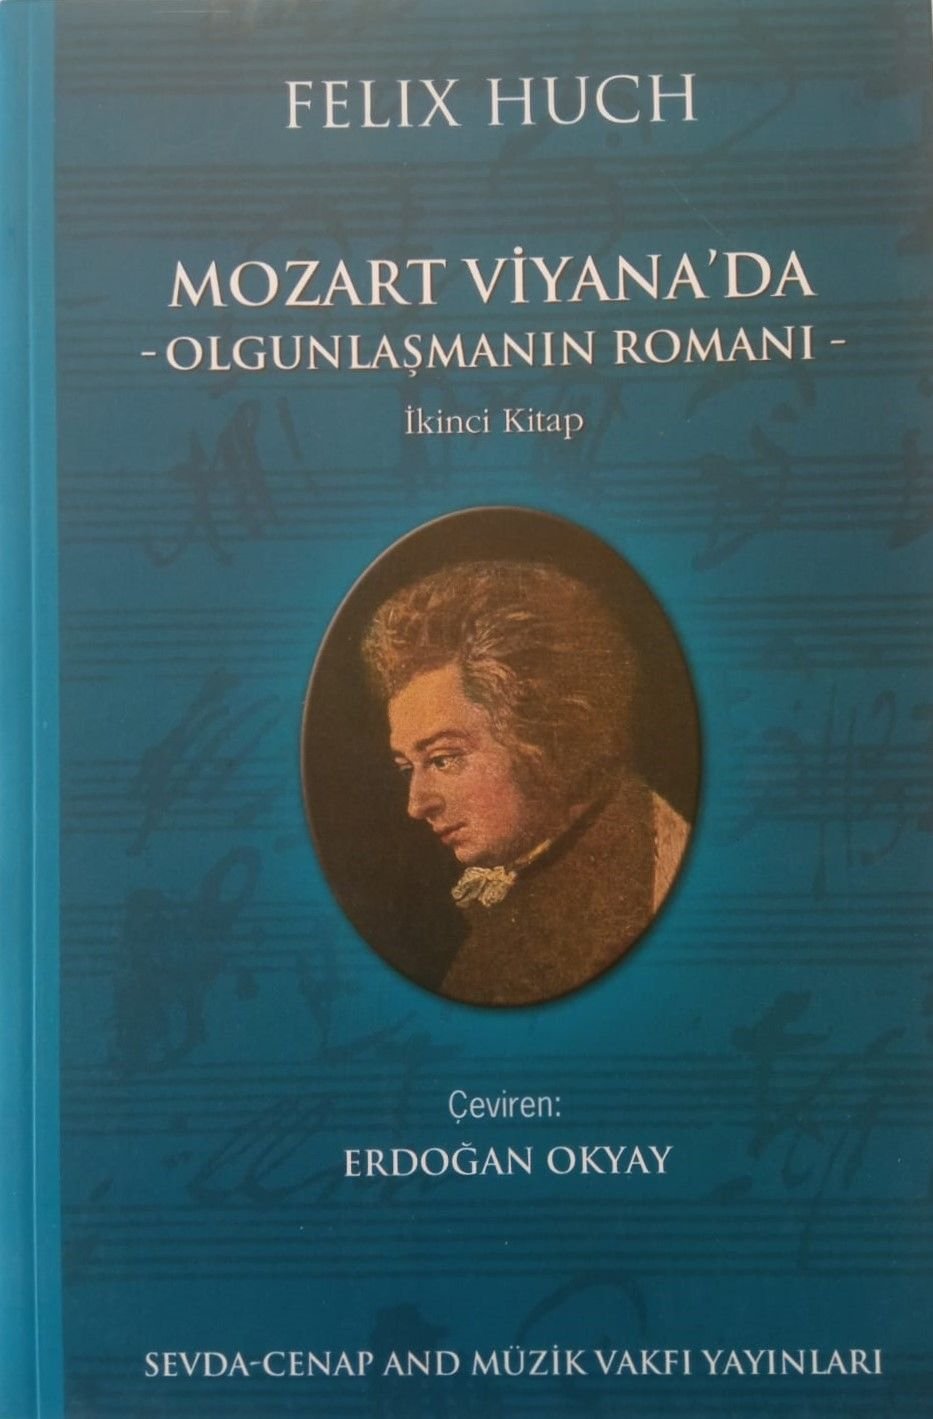 Mozart Viyana'da-Olgunlaşmanın Romanı-Felix Huch-İkinci Kitap